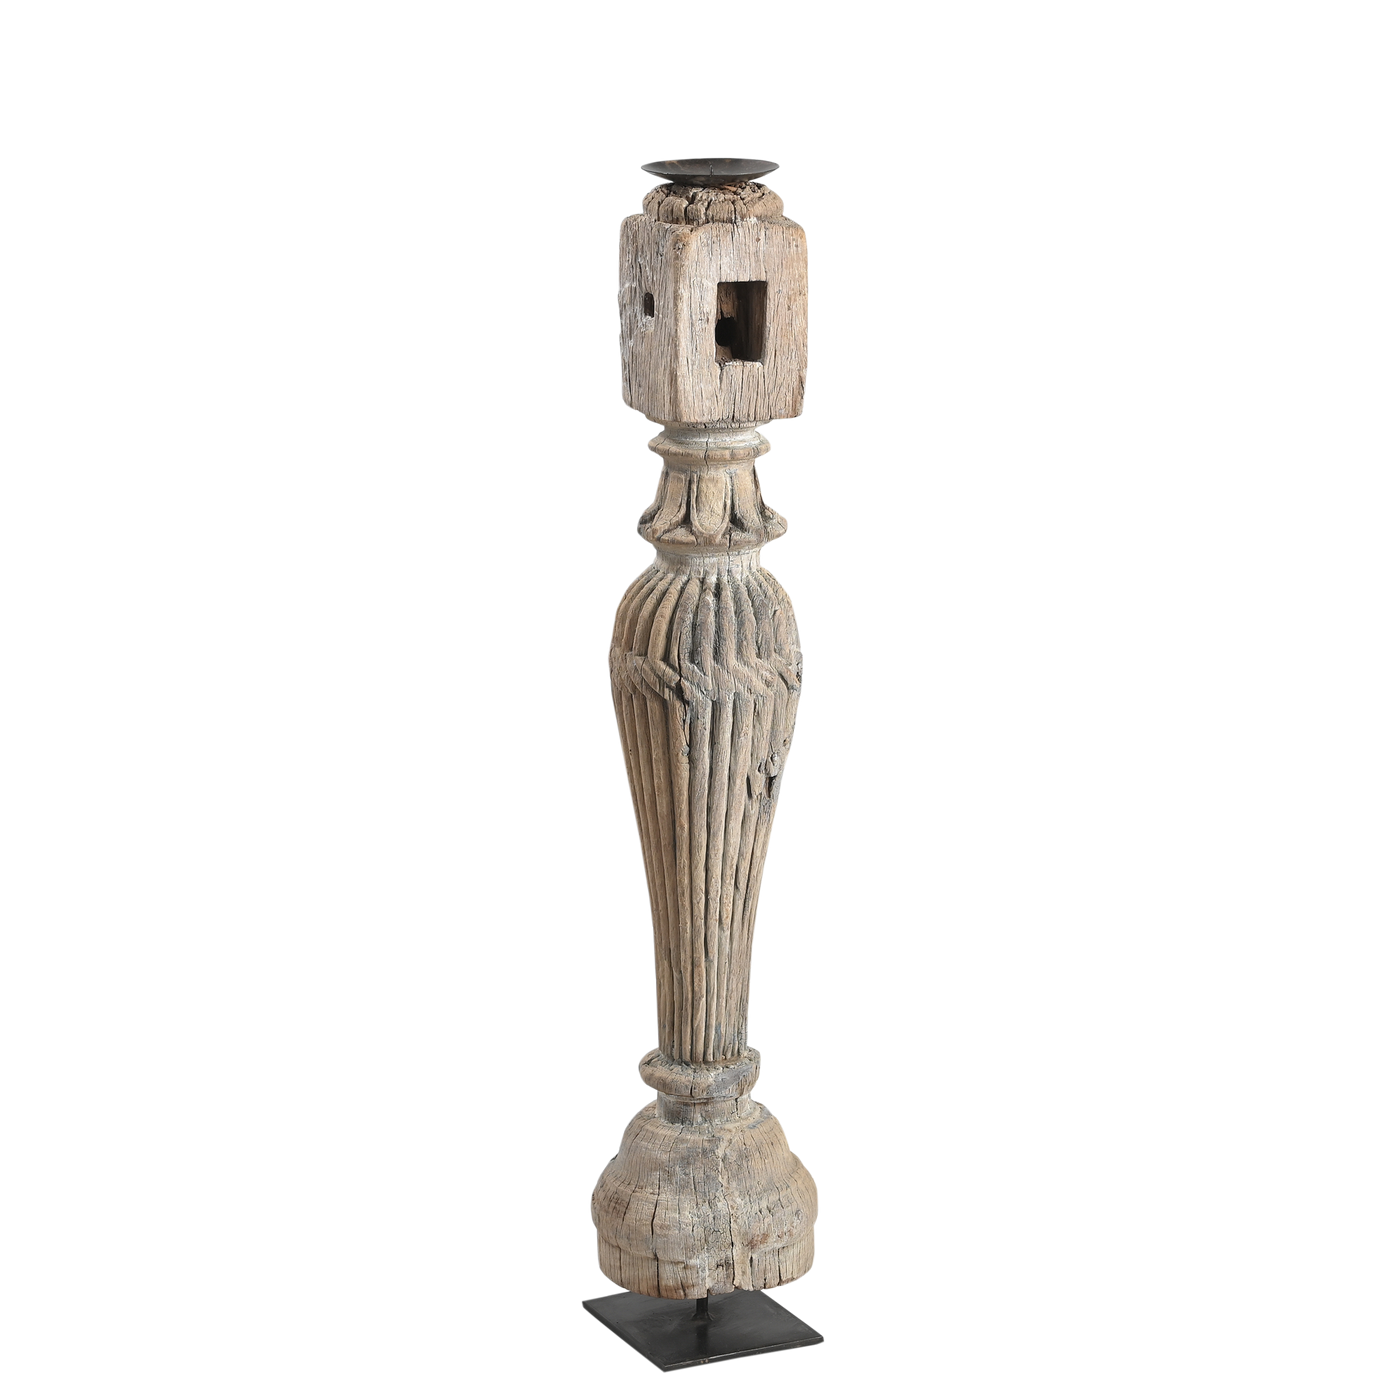 Rajvansh - old wooden candle holder n ° 62